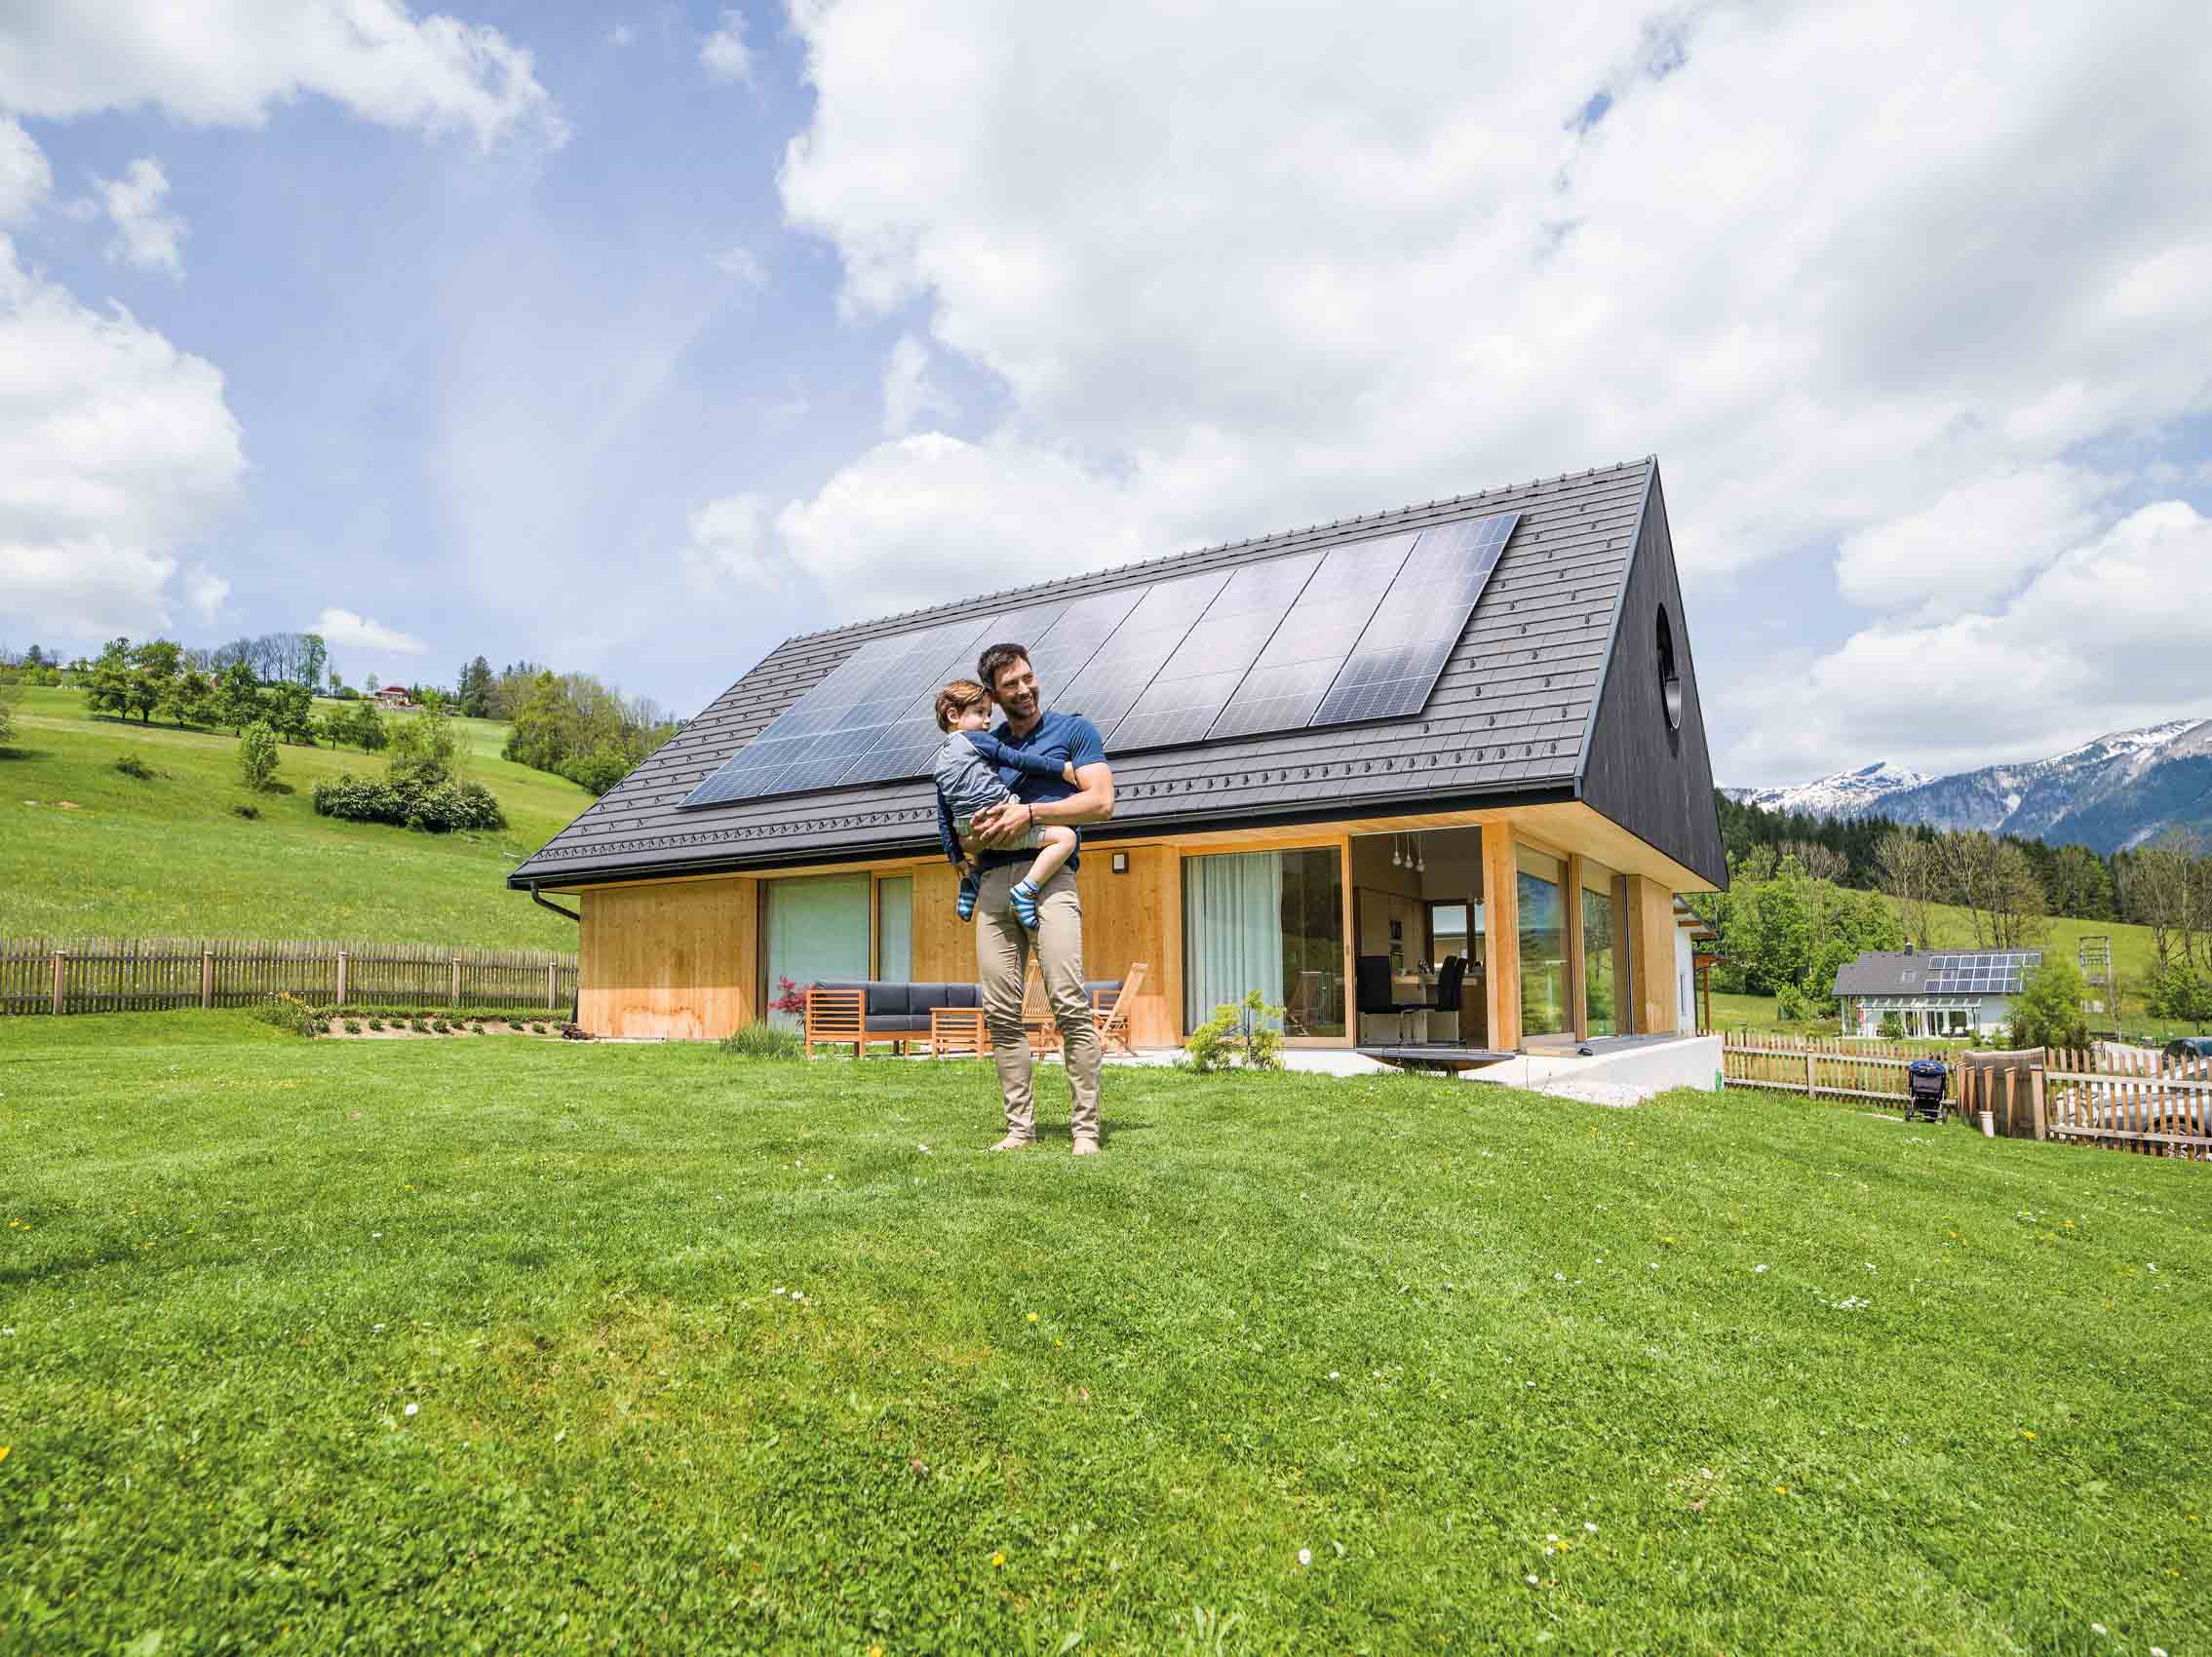 Henke Dachdeckerei | Zimmerei | Solartechnik für Rinteln - Fronius - Photovoltaikanlage von der Sonne finanziert